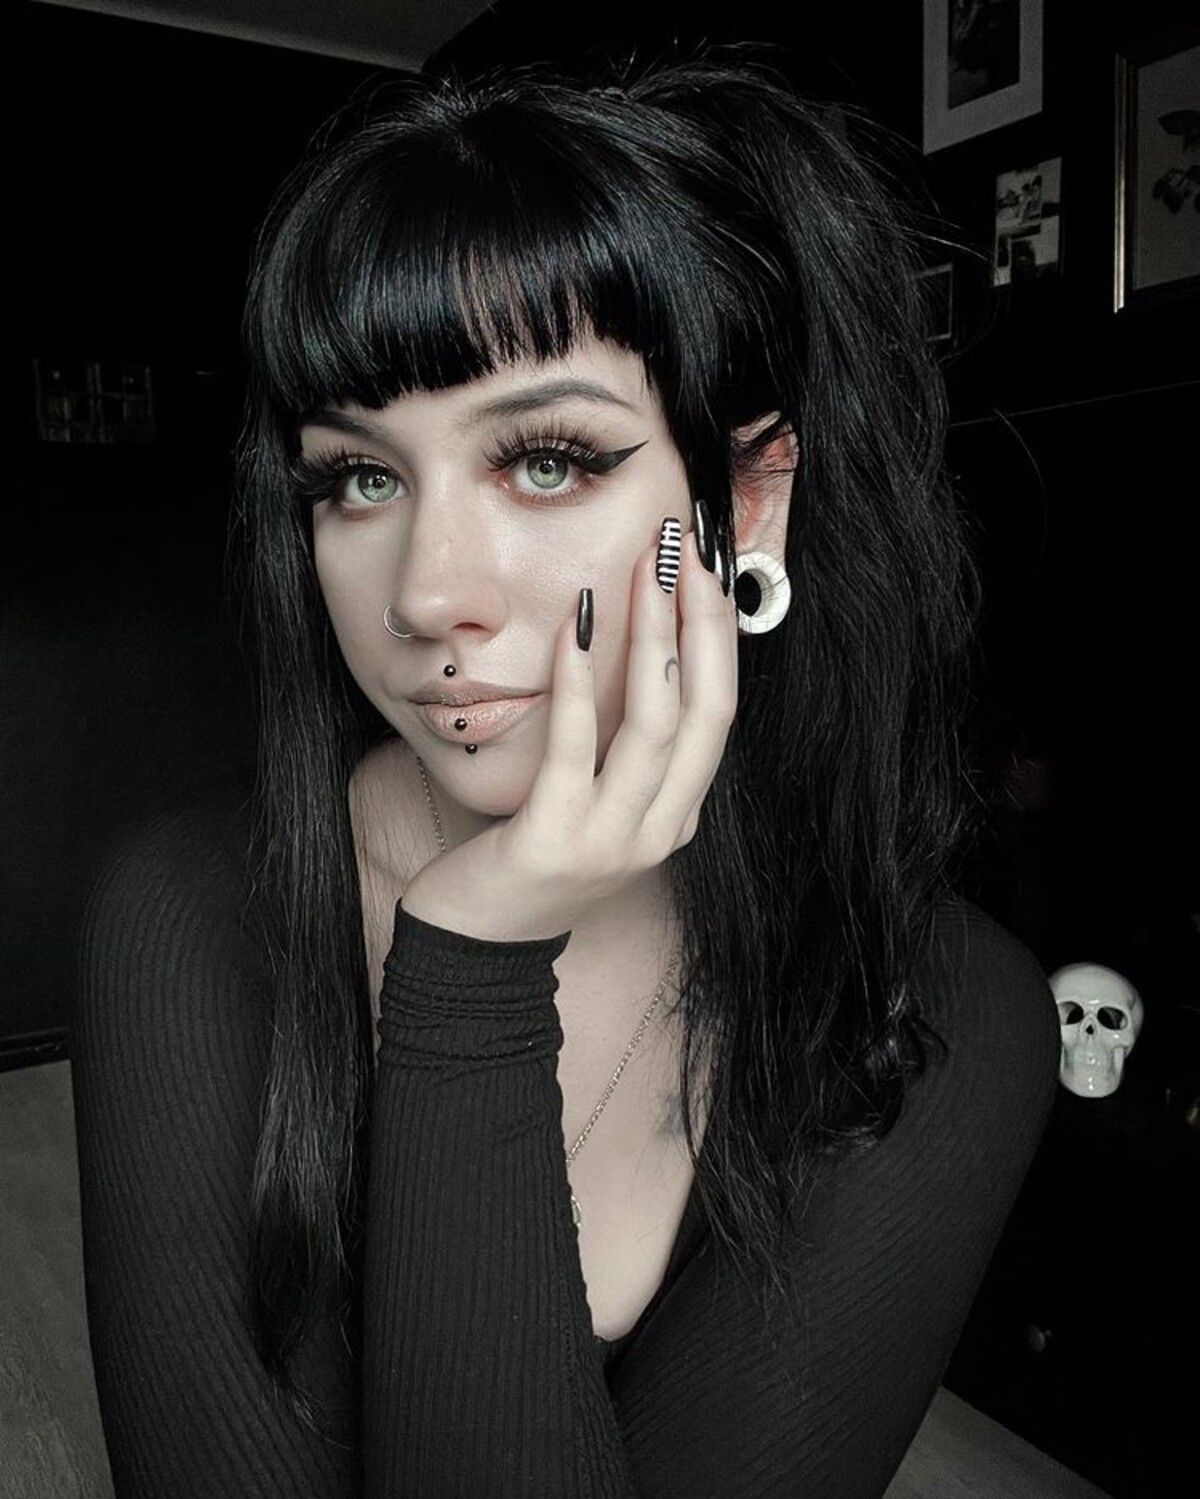 Svoj dokonalý gothcore zdieľa na svojom Instagrame aj Jessica, ktorú nájdeš na sociálnej sieti ako jaykuntergrau.